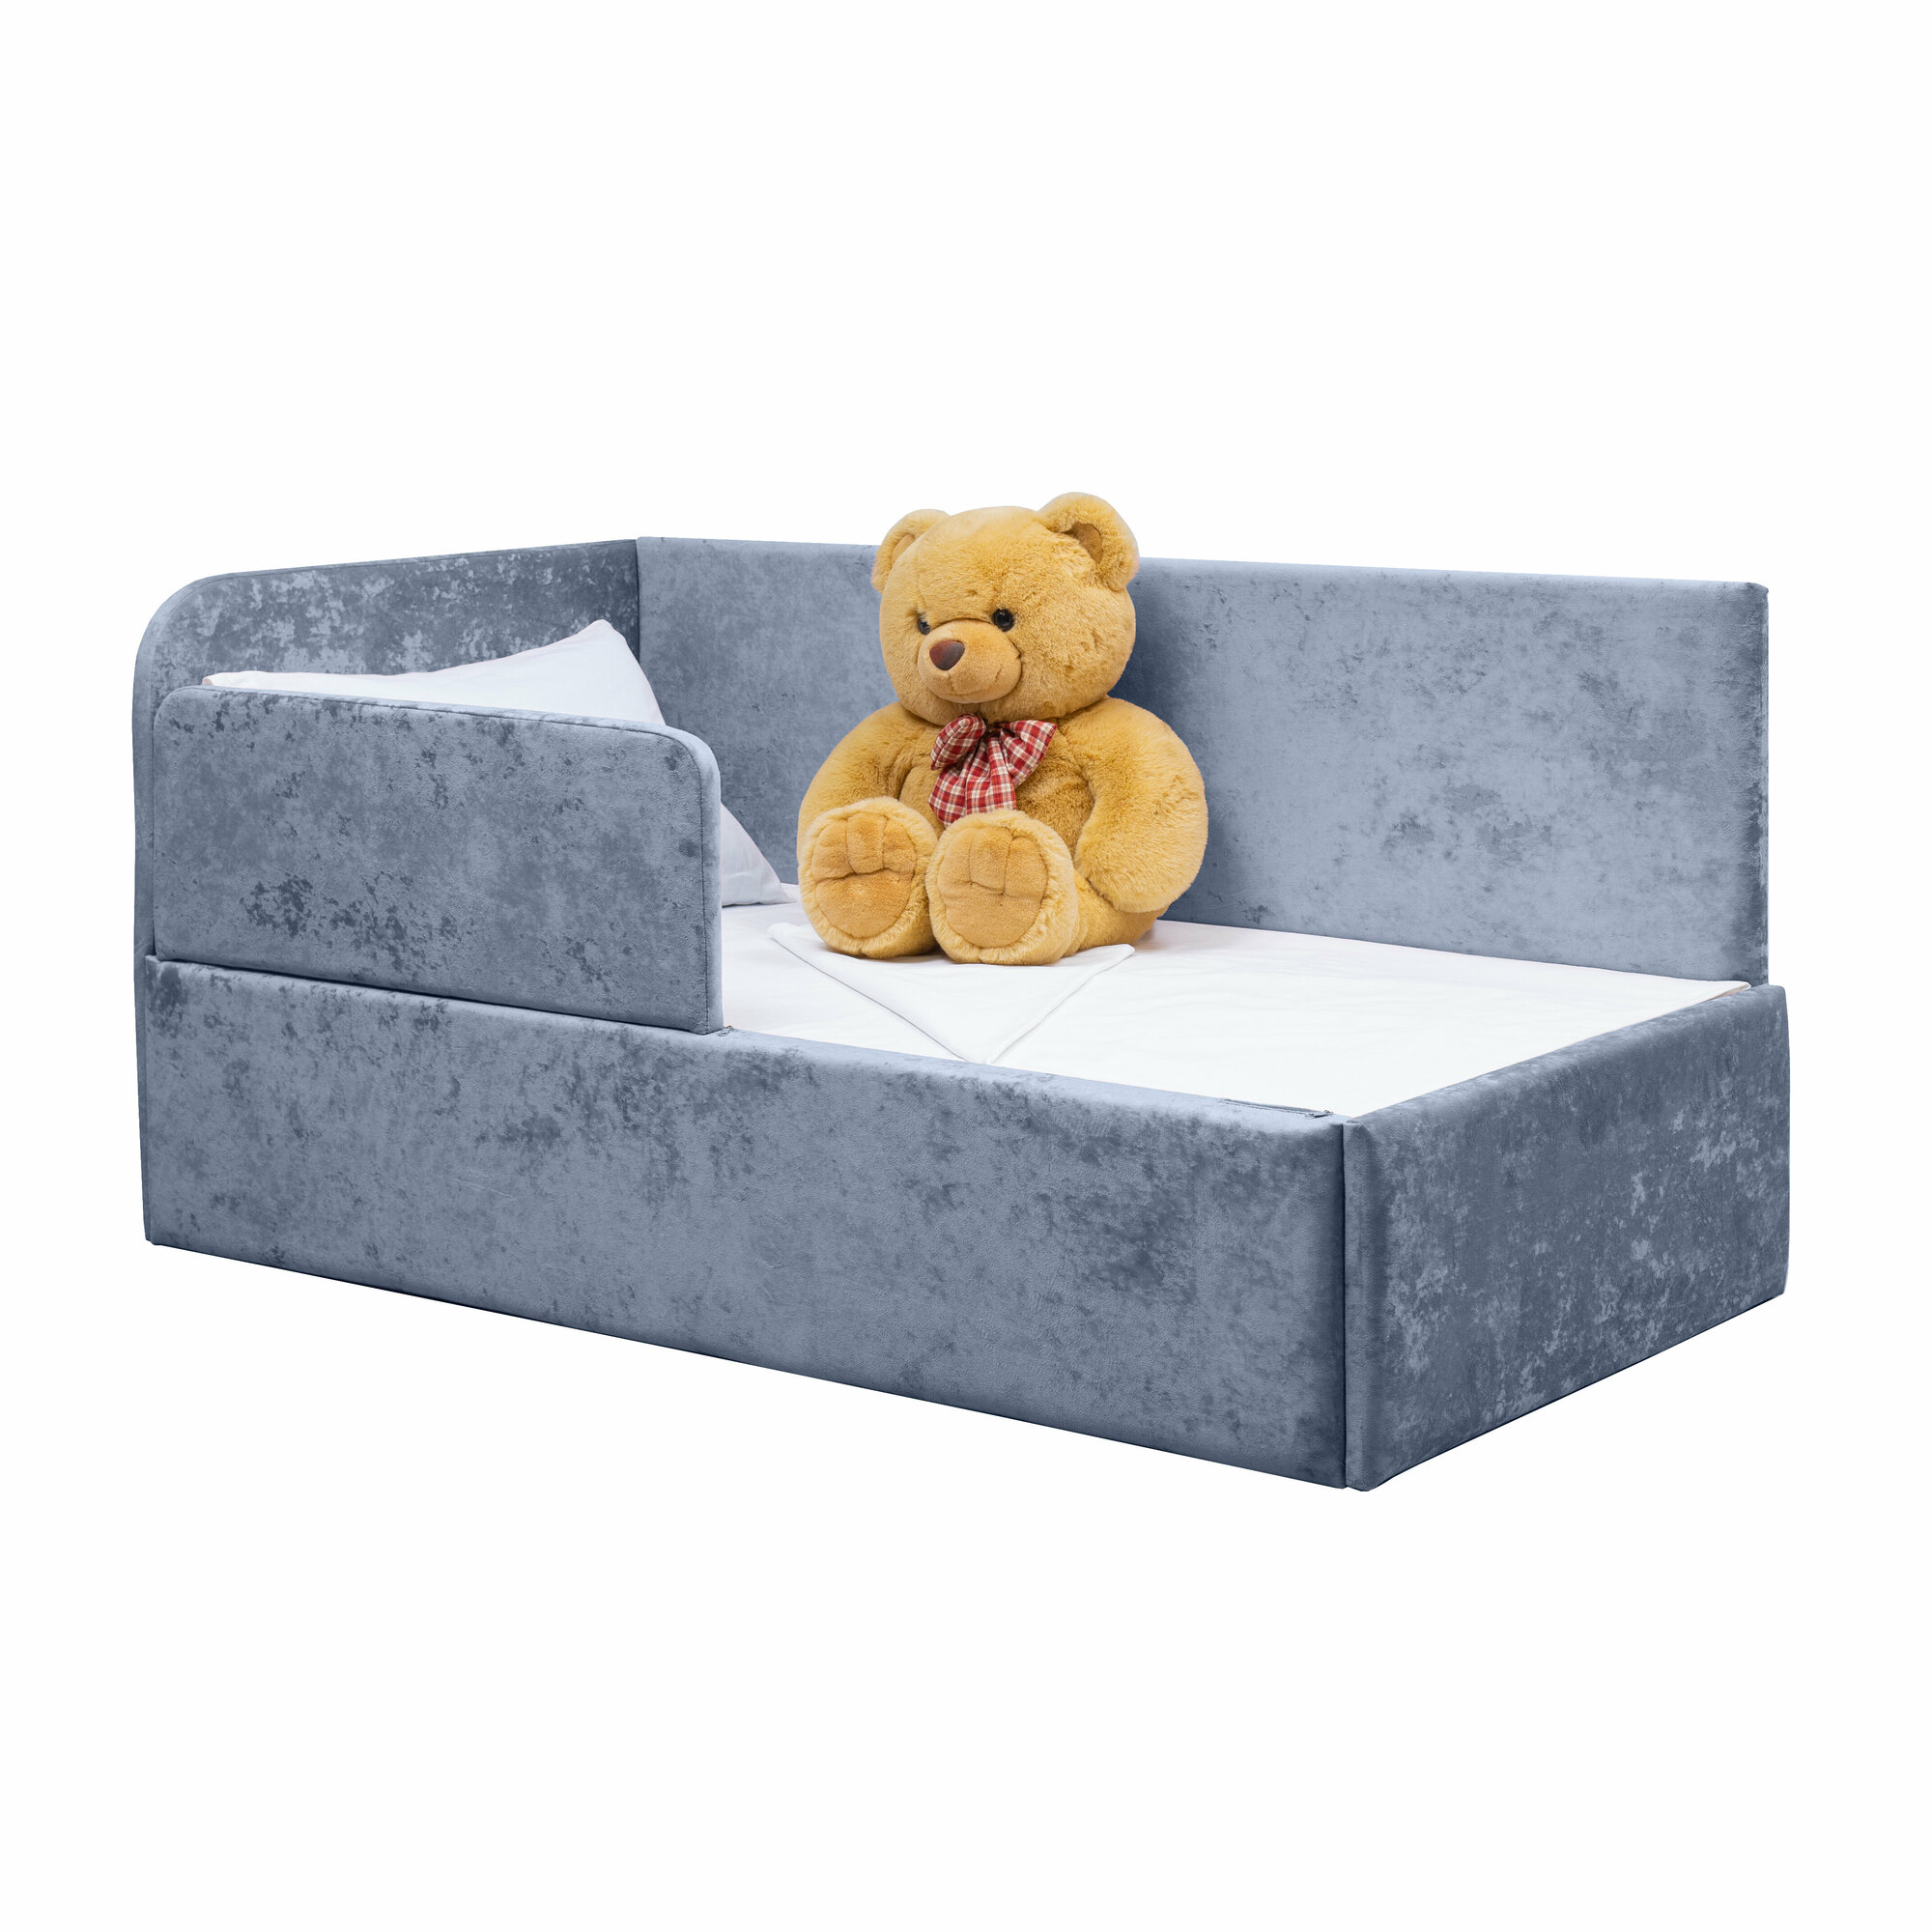 Кровать-диван Непоседа 180*90 голубая с защитным бортиком, без ящика, левый угол сборки